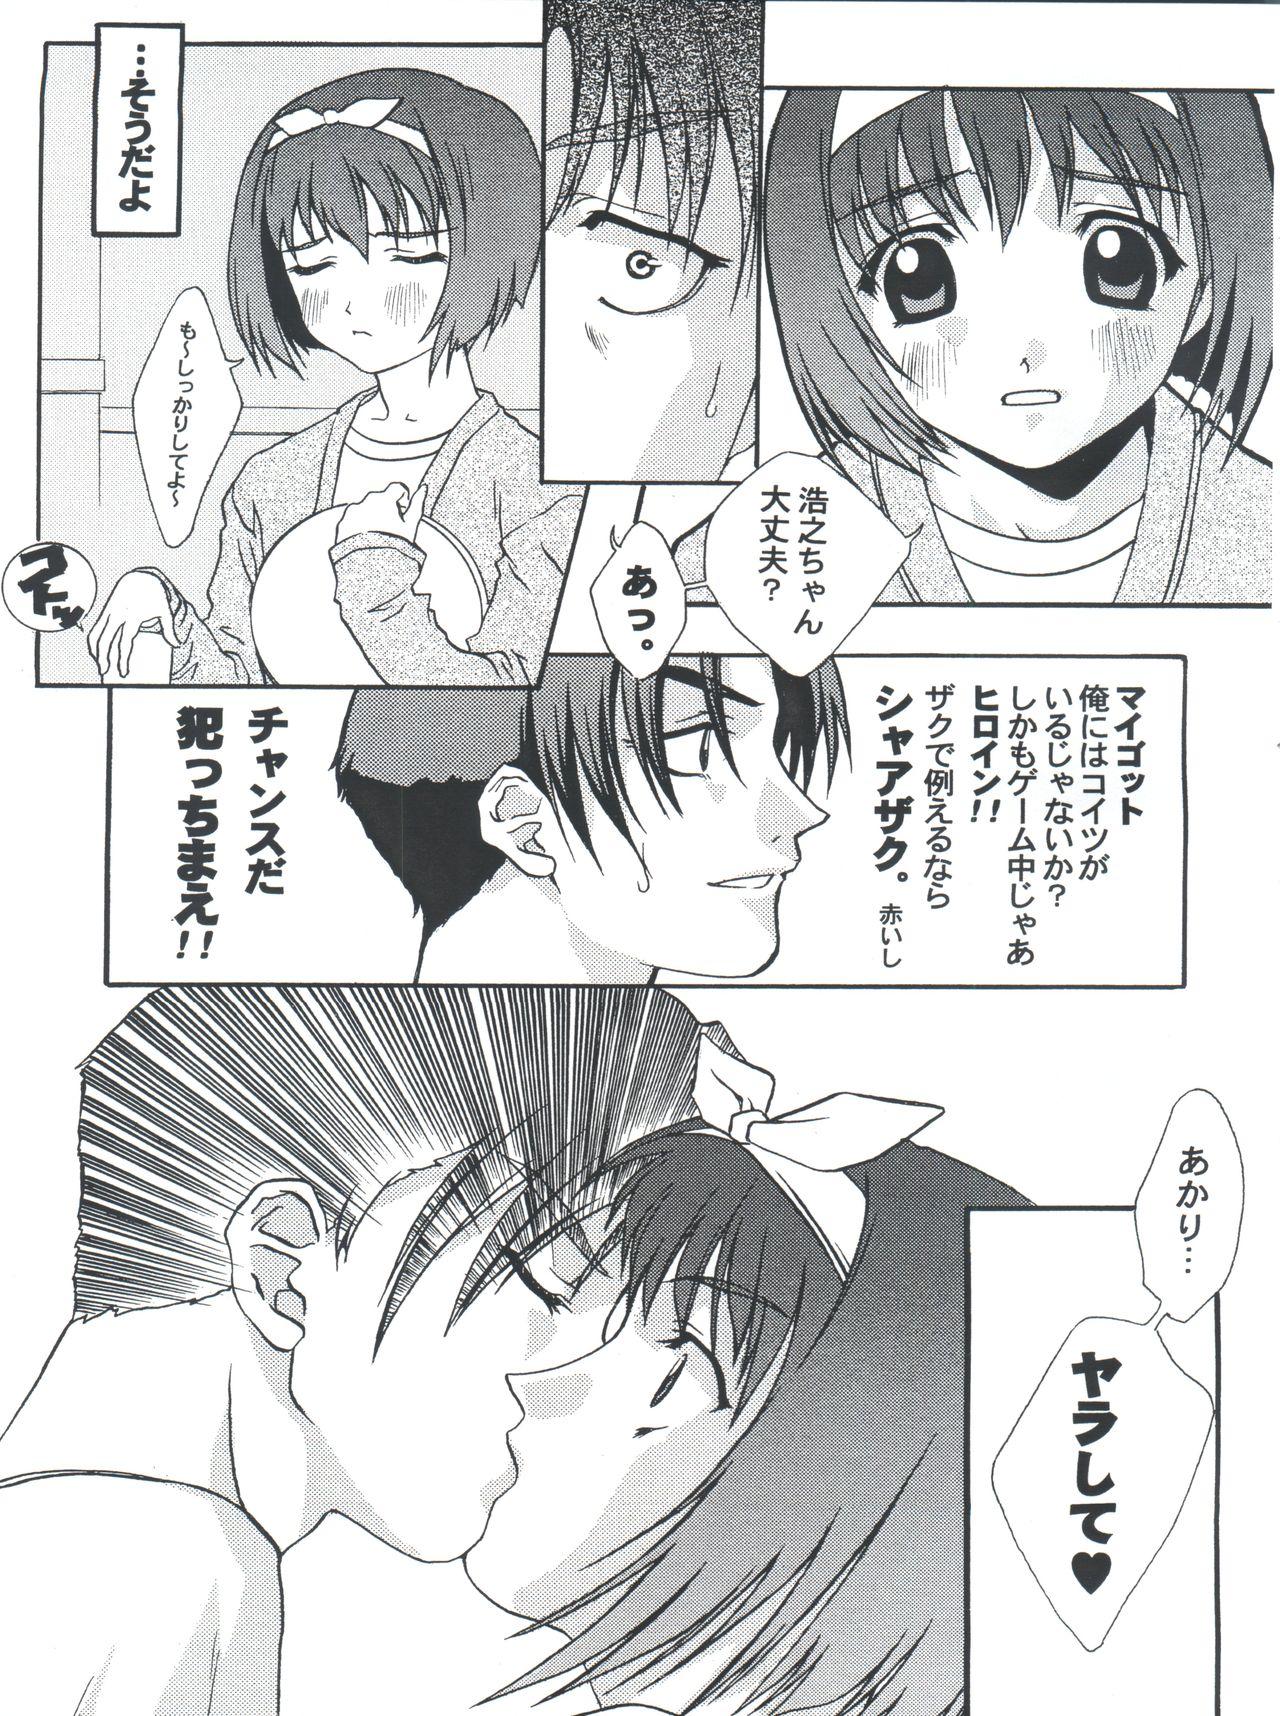 Exhib Nani? - Sakura taisen To heart Legs - Page 7